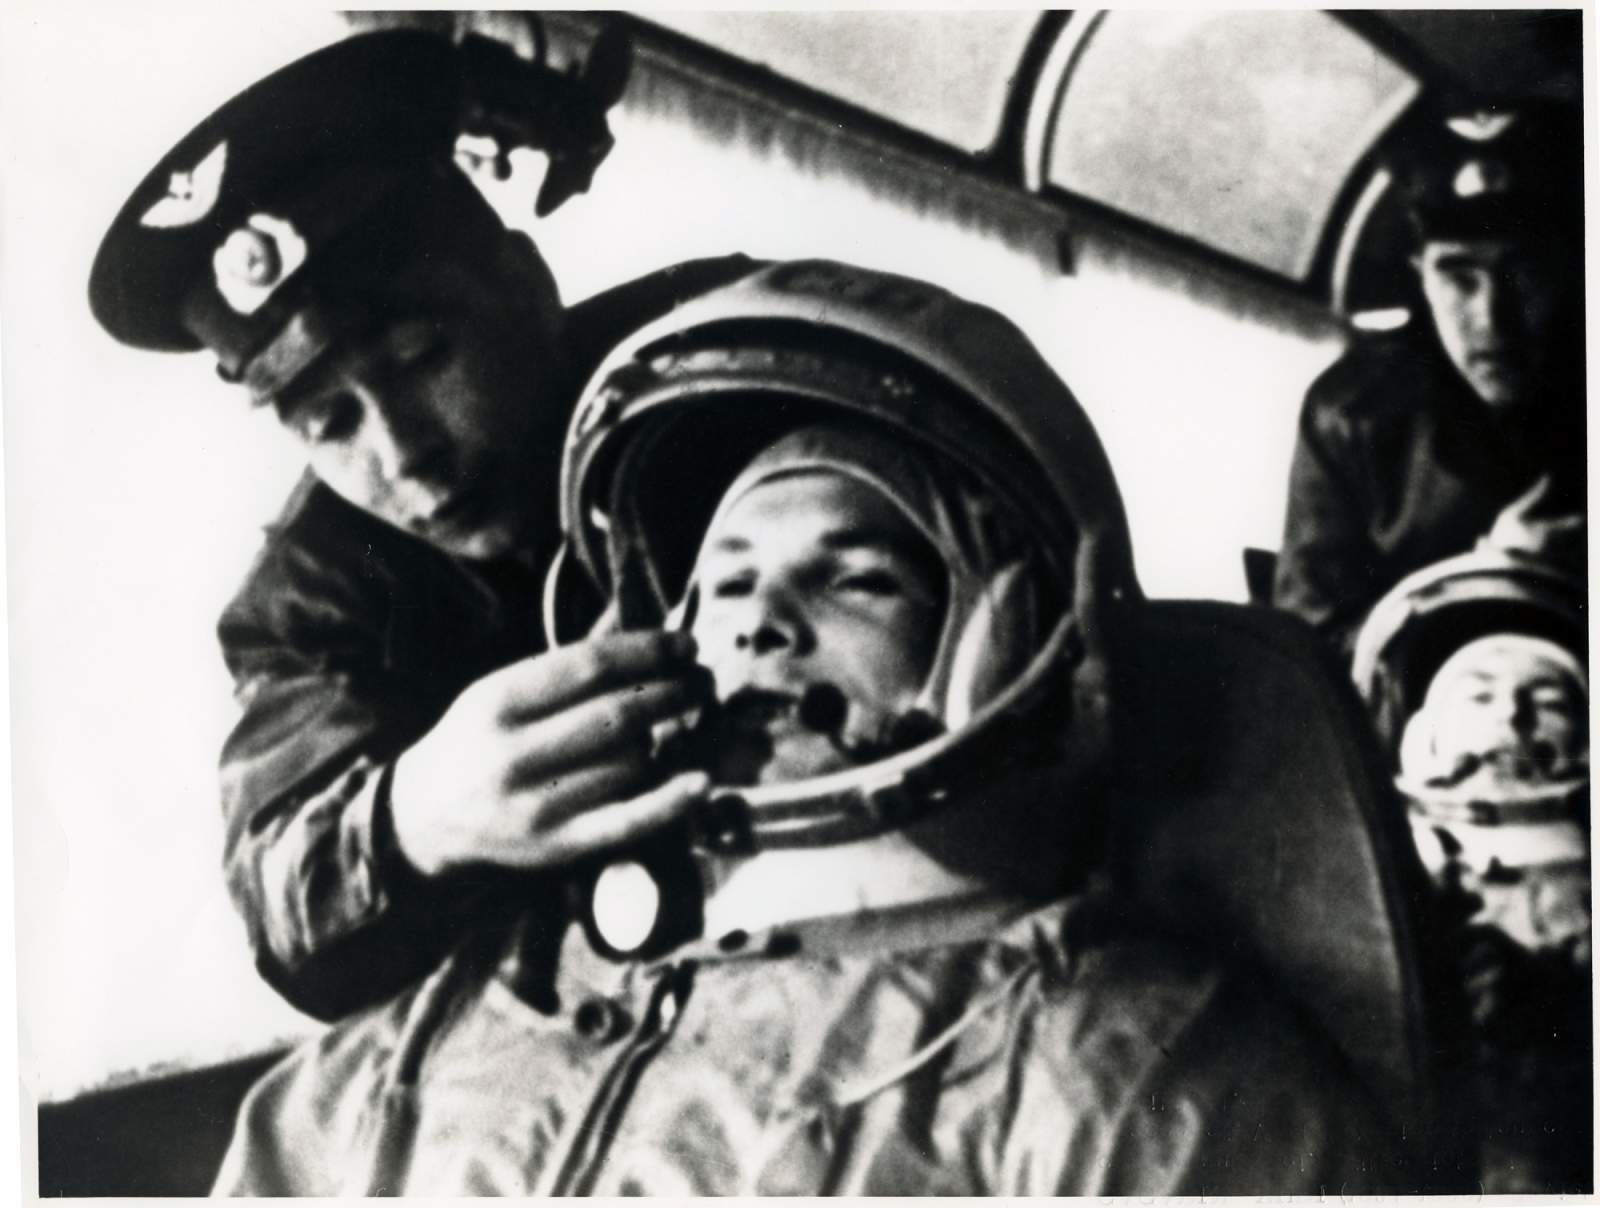 12 Απριλίου 1961…Ο Σοβιετικός κοσμοναύτης Γιούρι Γκαγκάριν γίνεται ο πρώτος άνθρωπος που ταξιδεύει στο διάστημα και εκτελεί την πρώτη επανδρωμένη τροχιακή πτήση, με το Βοστόκ 1.